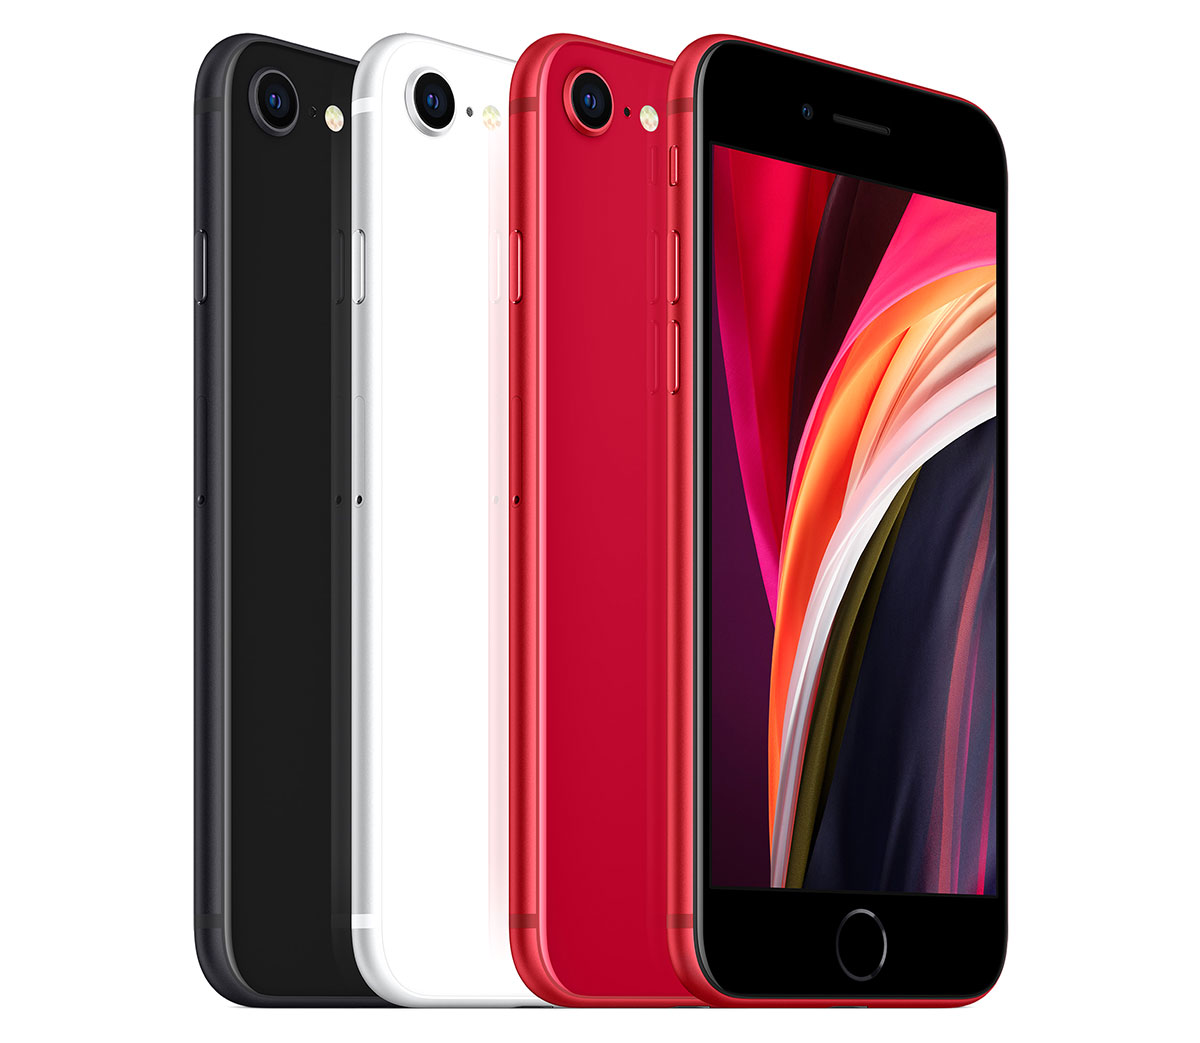 Apple iPhone SE (2020) : Caratteristiche e Opinioni | JuzaPhoto